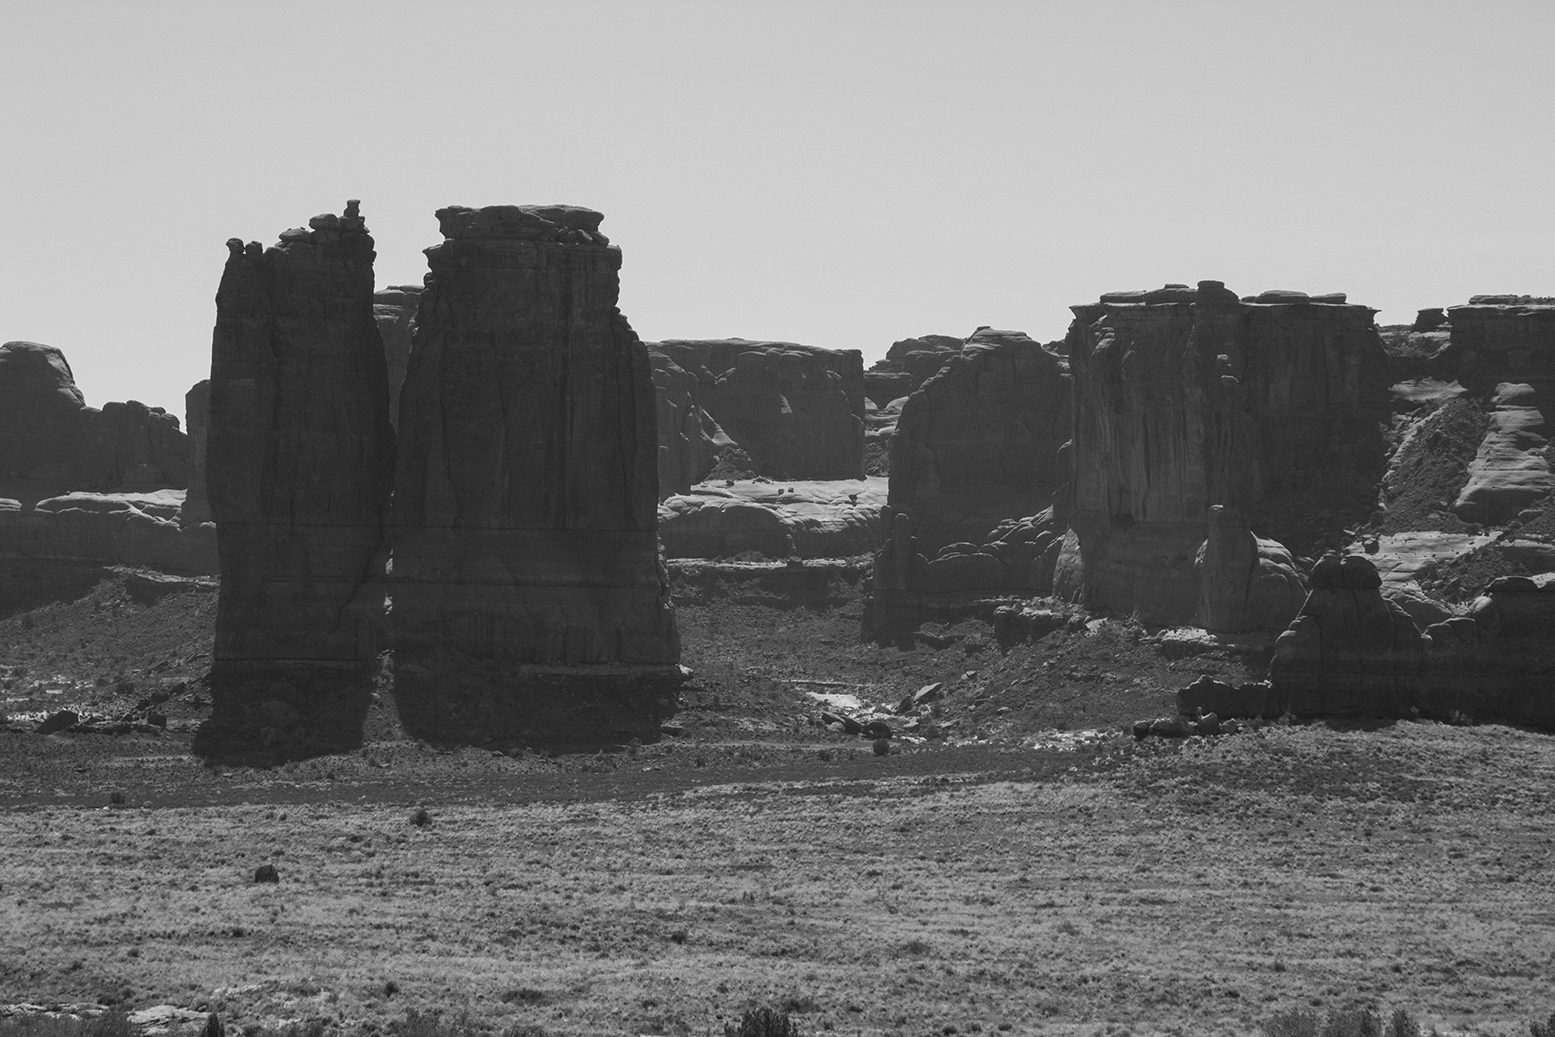 Cliffs outside Moab, Ut